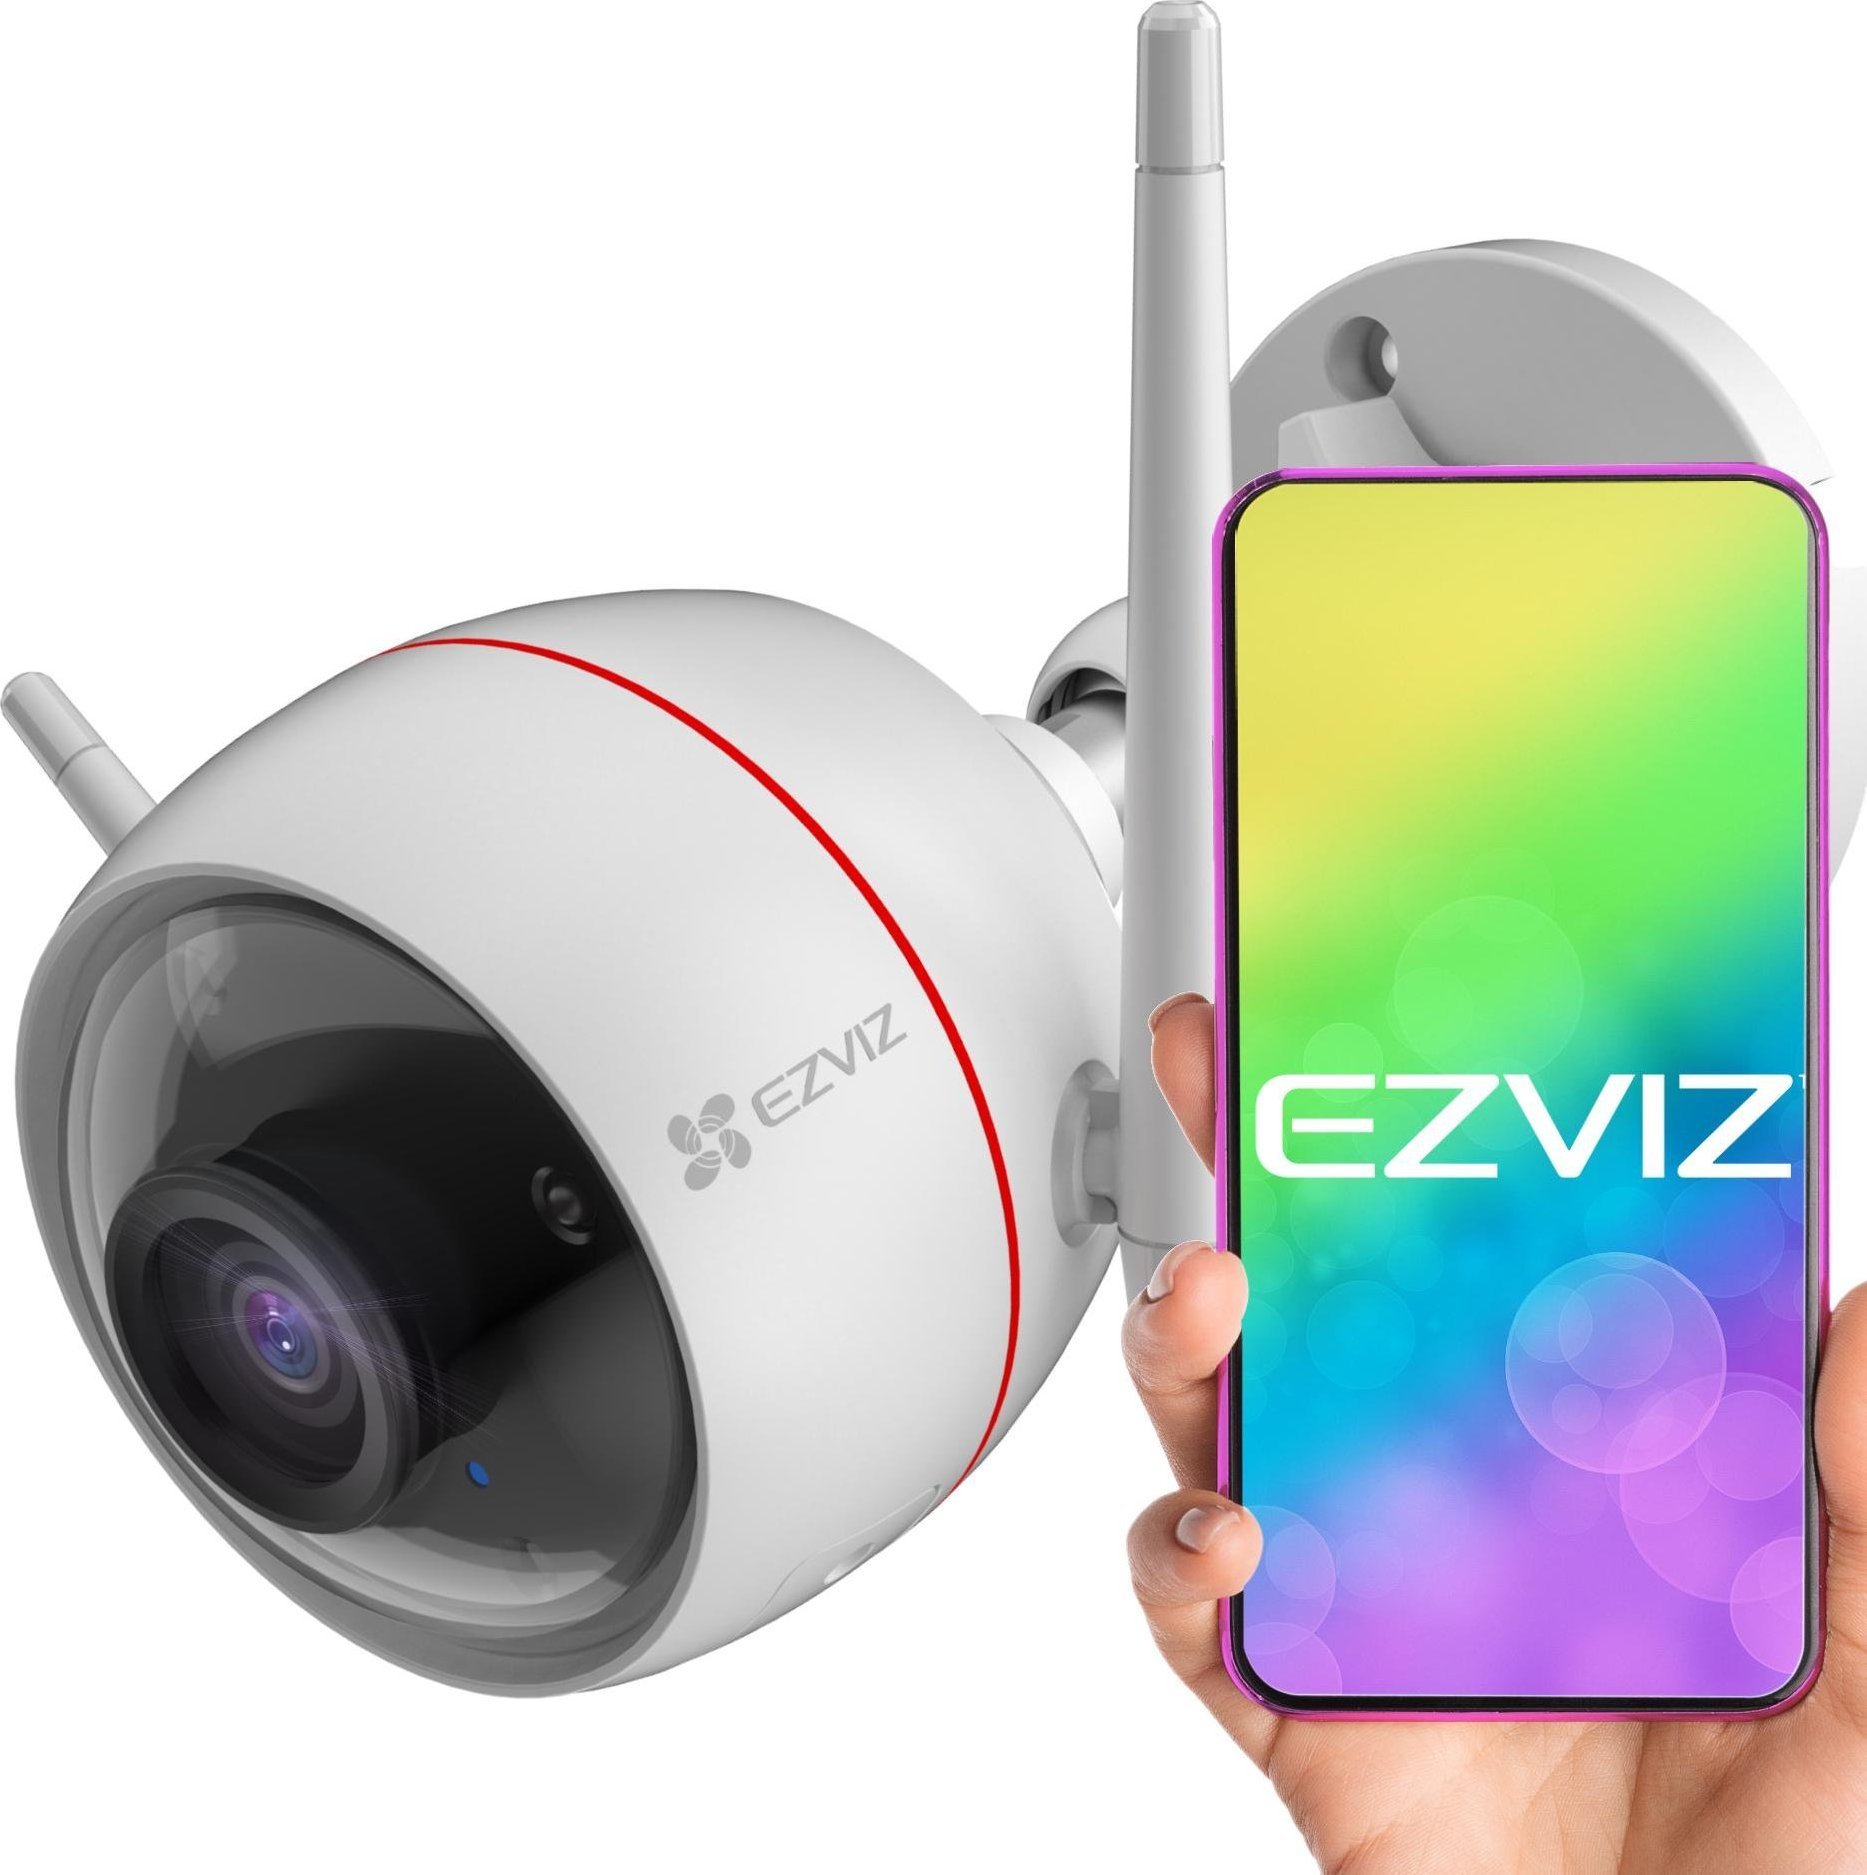 Camera IP Ezviz C3T Pro este o camera de supraveghere video care poate fi conectata la internet si care ofera o imagine de calitate superioara. Aceasta este usor de instalat si are o interfata intuitiva, ceea ce o face o alegere ideala pentru orice p